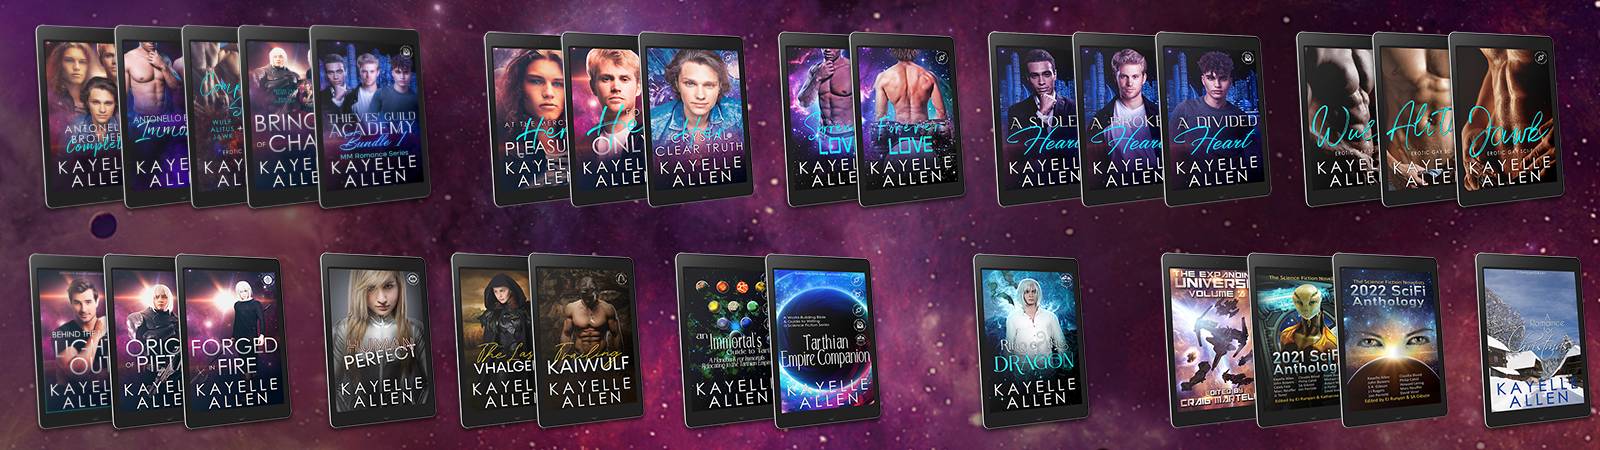 Books by Science Fiction Romance author Kayelle Allen #SciFi #Romance